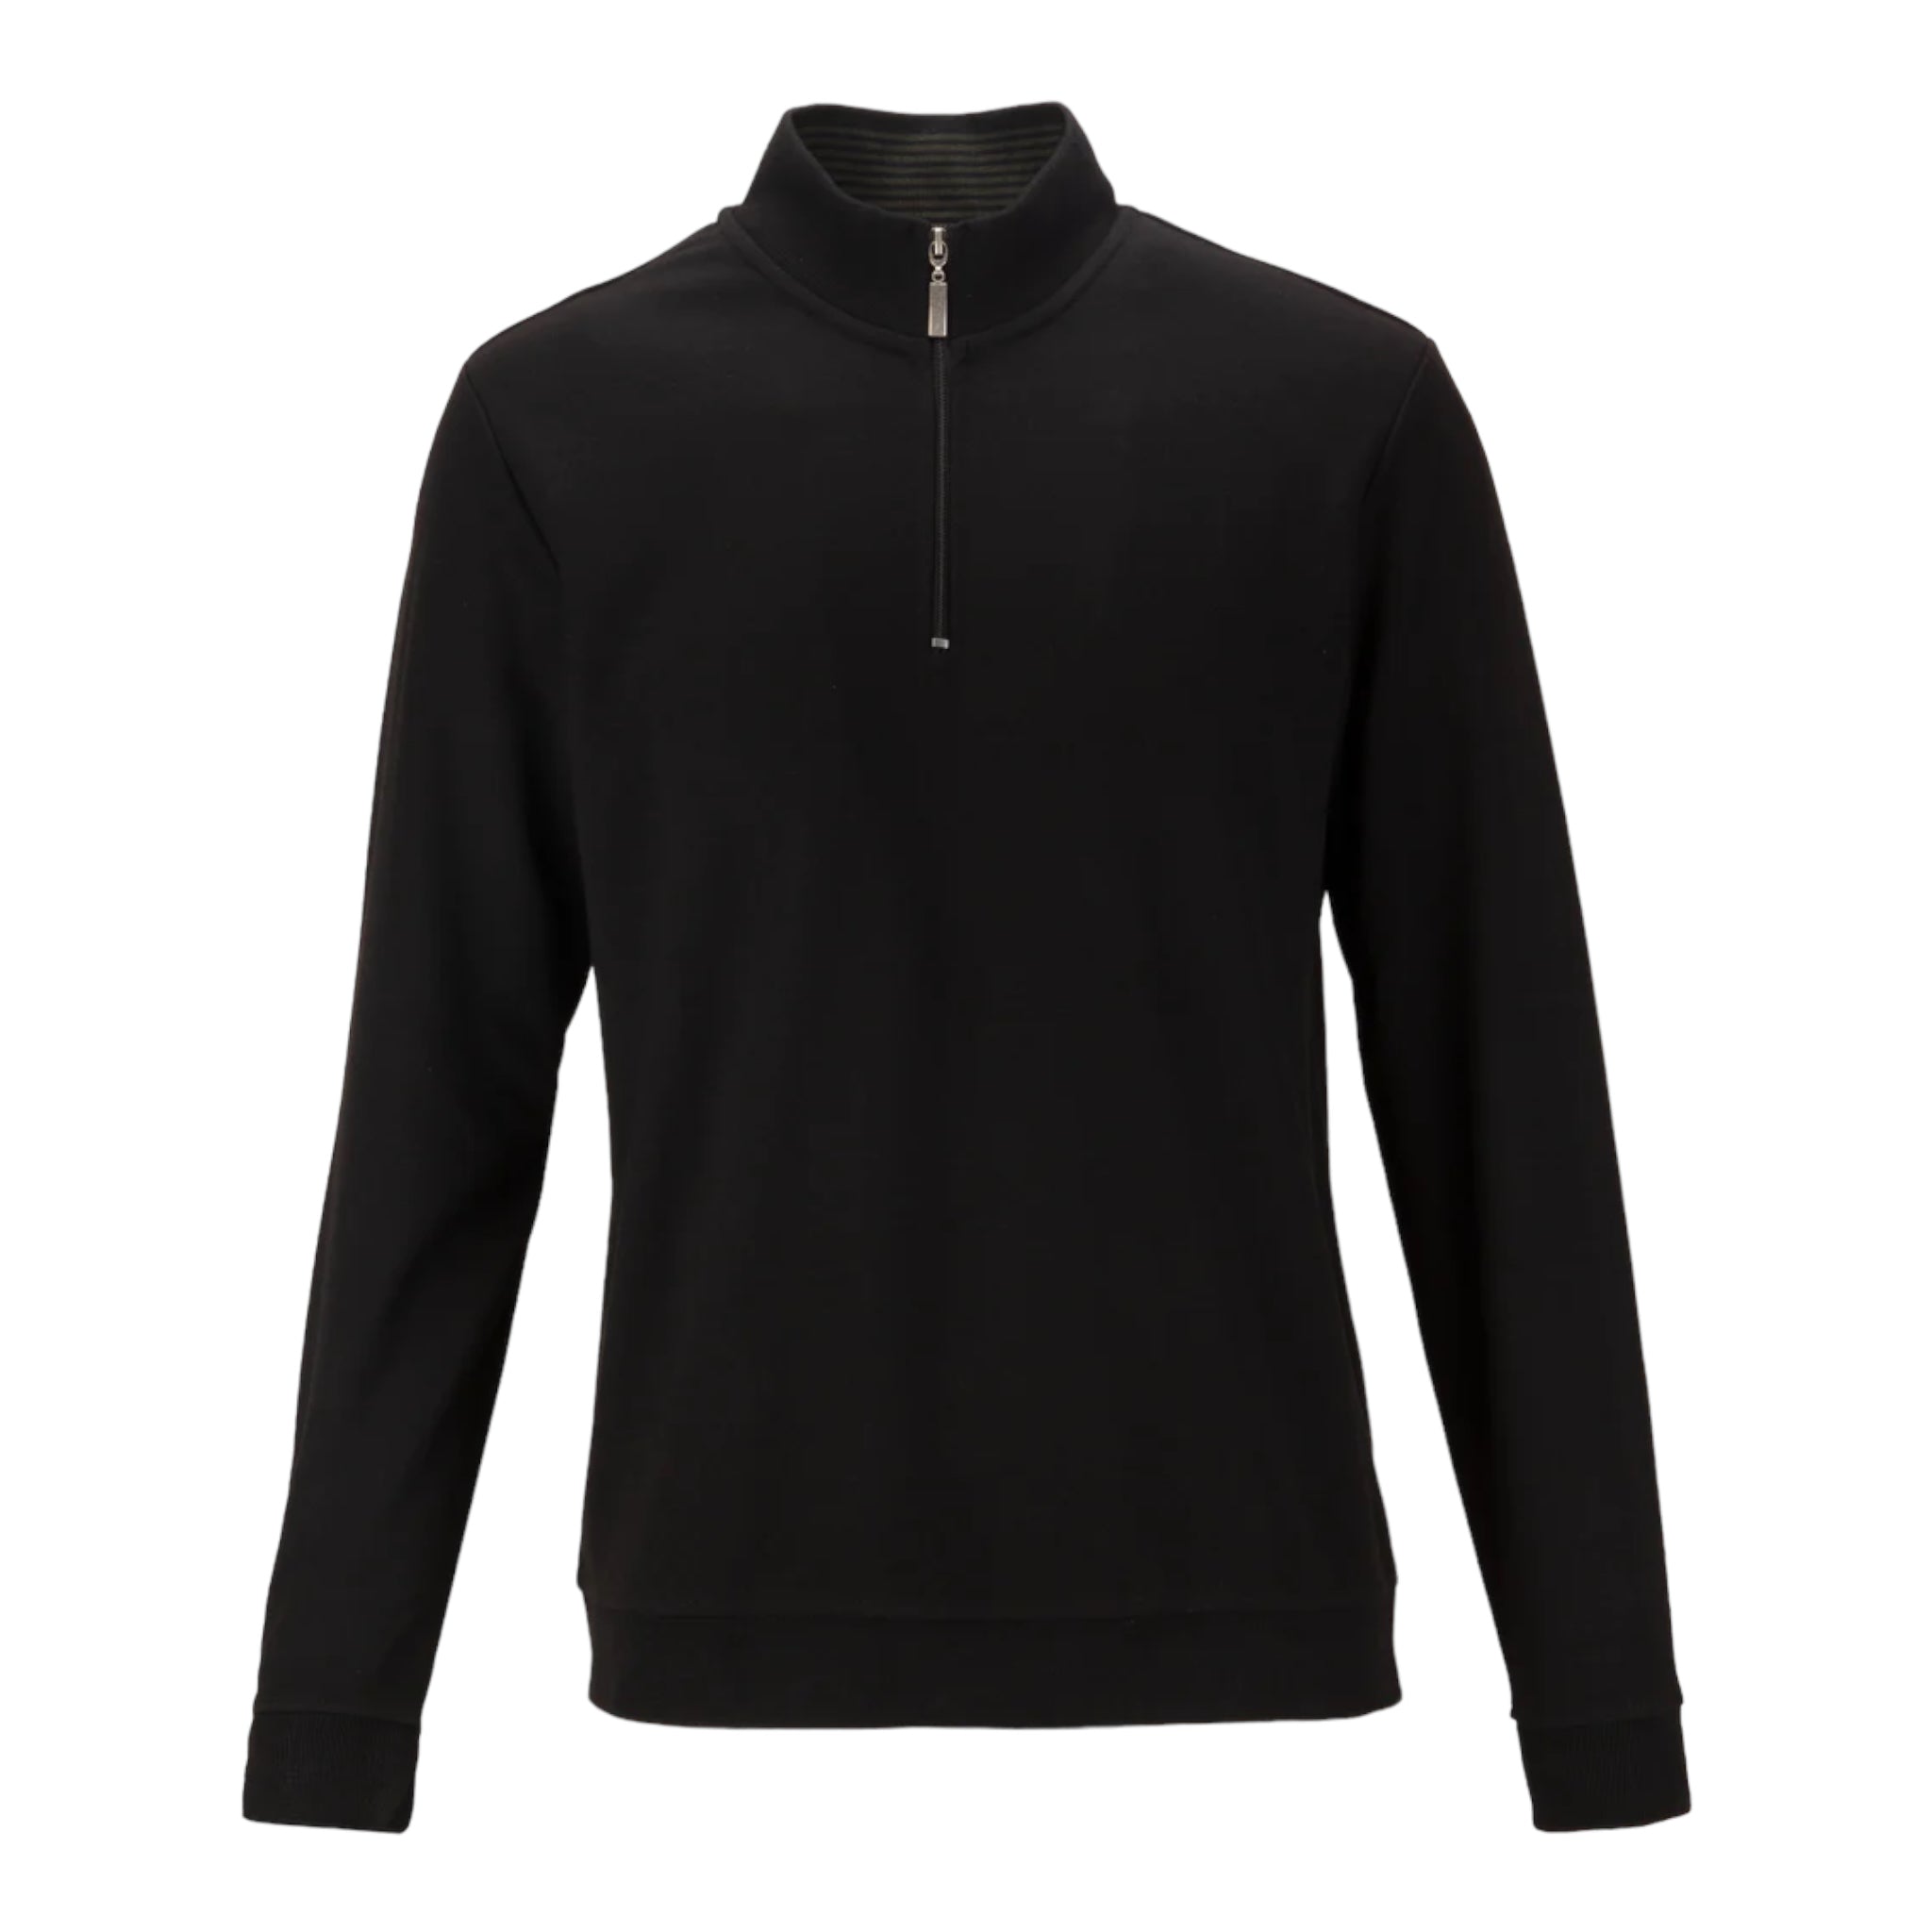 Guide London Black Half Zip Sweater (SW1018)